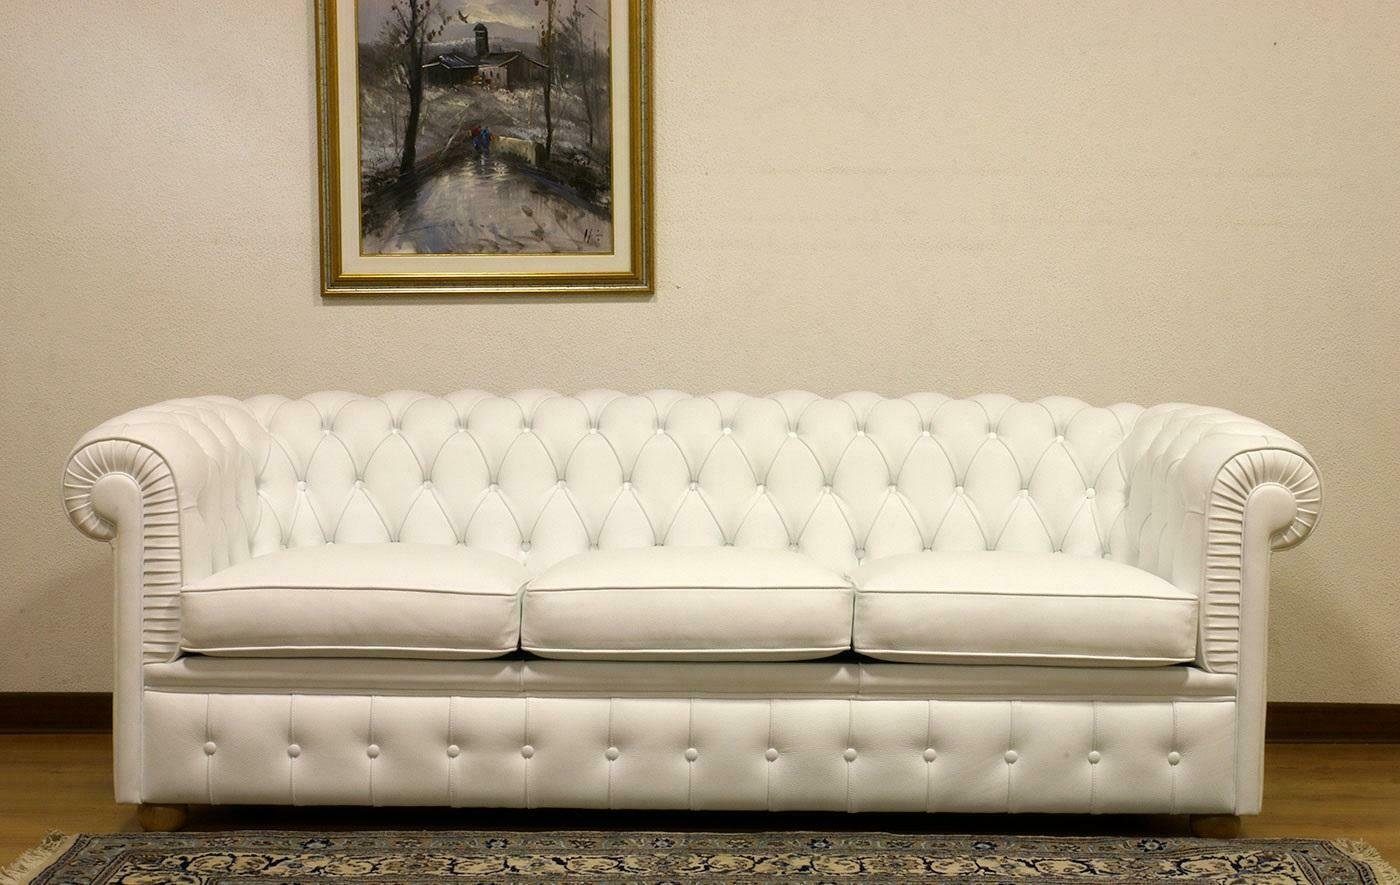 JVmoebel 3-Sitzer Design Chesterfield Sofagarnitur 3-Sitzer Leder Couch Weiß Polster, Made in Europe